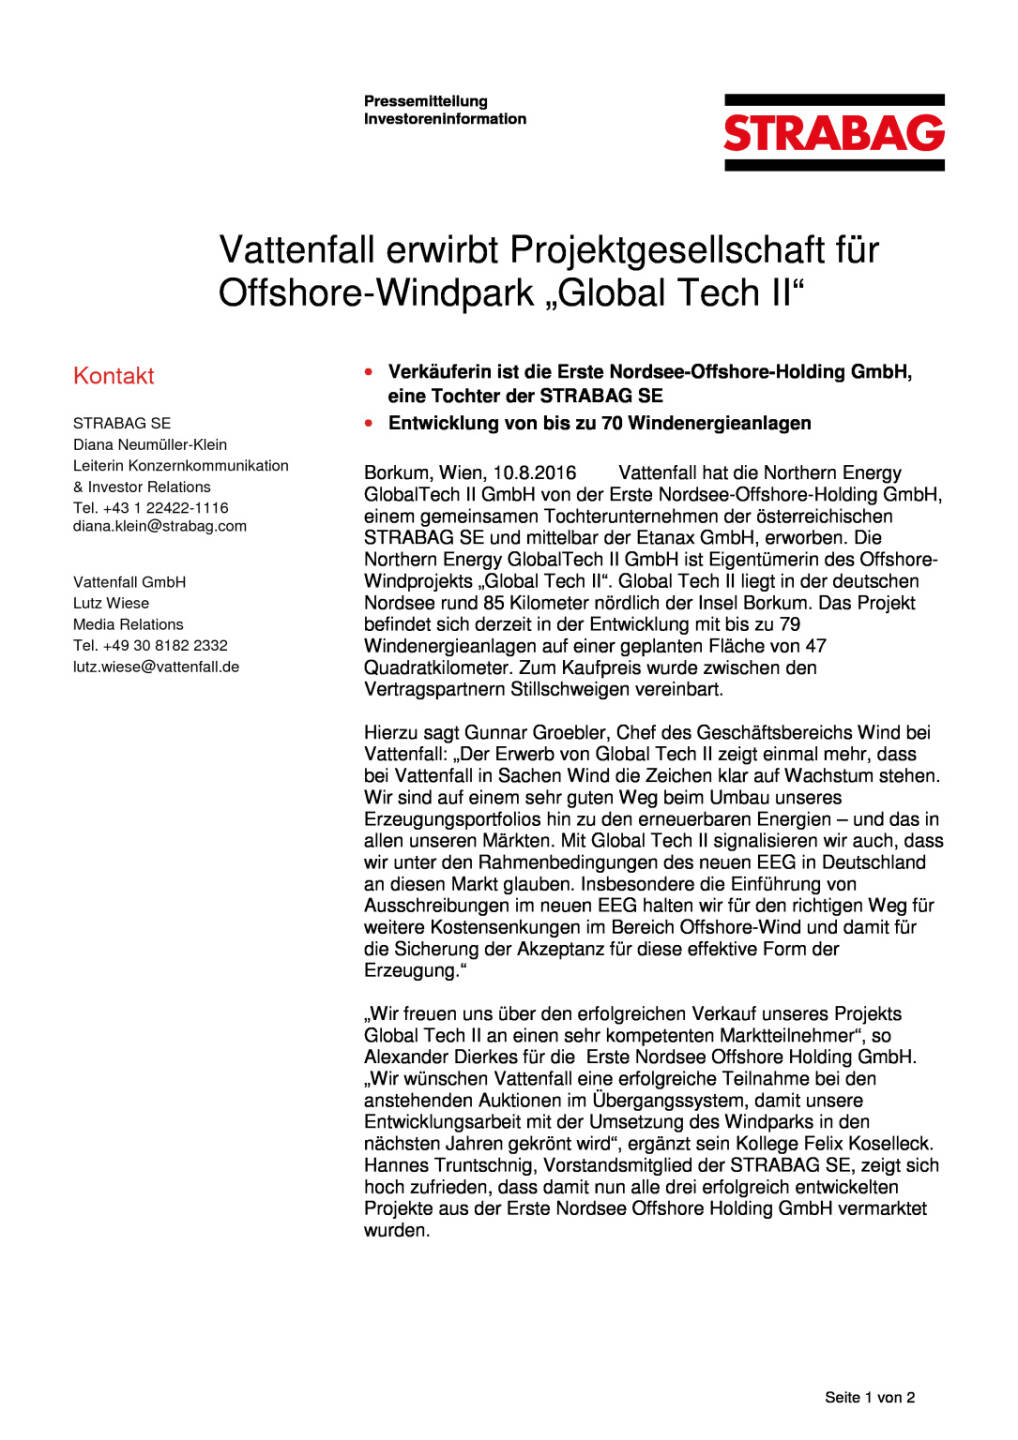 Strabag: Vattenfall/Global Tech II, Seite 1/2, komplettes Dokument unter http://boerse-social.com/static/uploads/file_1604_strabag_vattenfallglobal_tech_ii.pdf